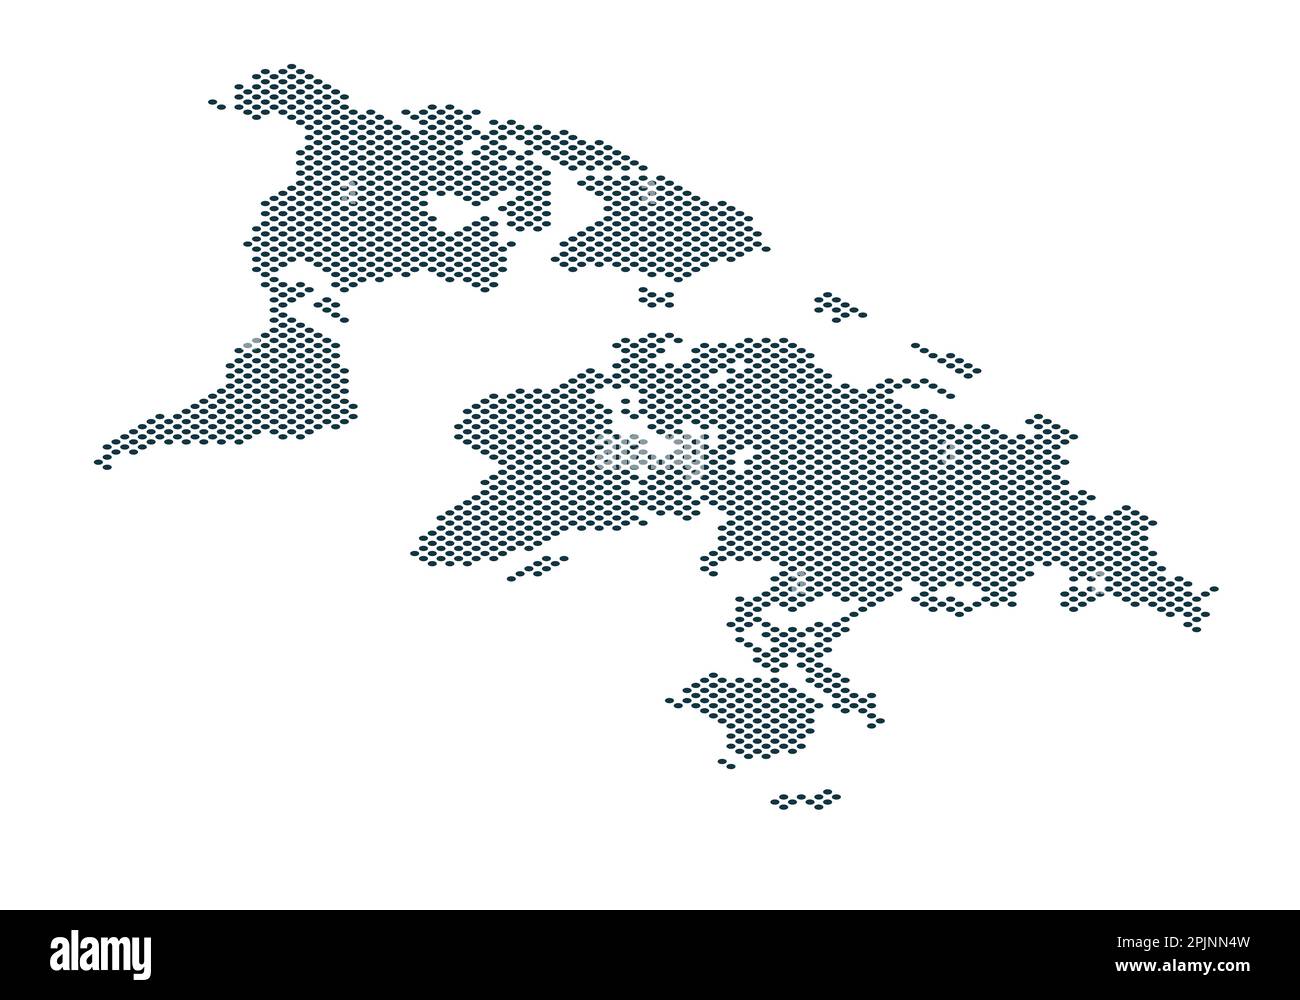 Isometrische gepunktete Erdkarte. Weltkarte aus Punkten. Weltkarte mit Kontinenten wie afrika, amerika, eurasien, europa, asien und australien. Punkte auf Whi Stock Vektor